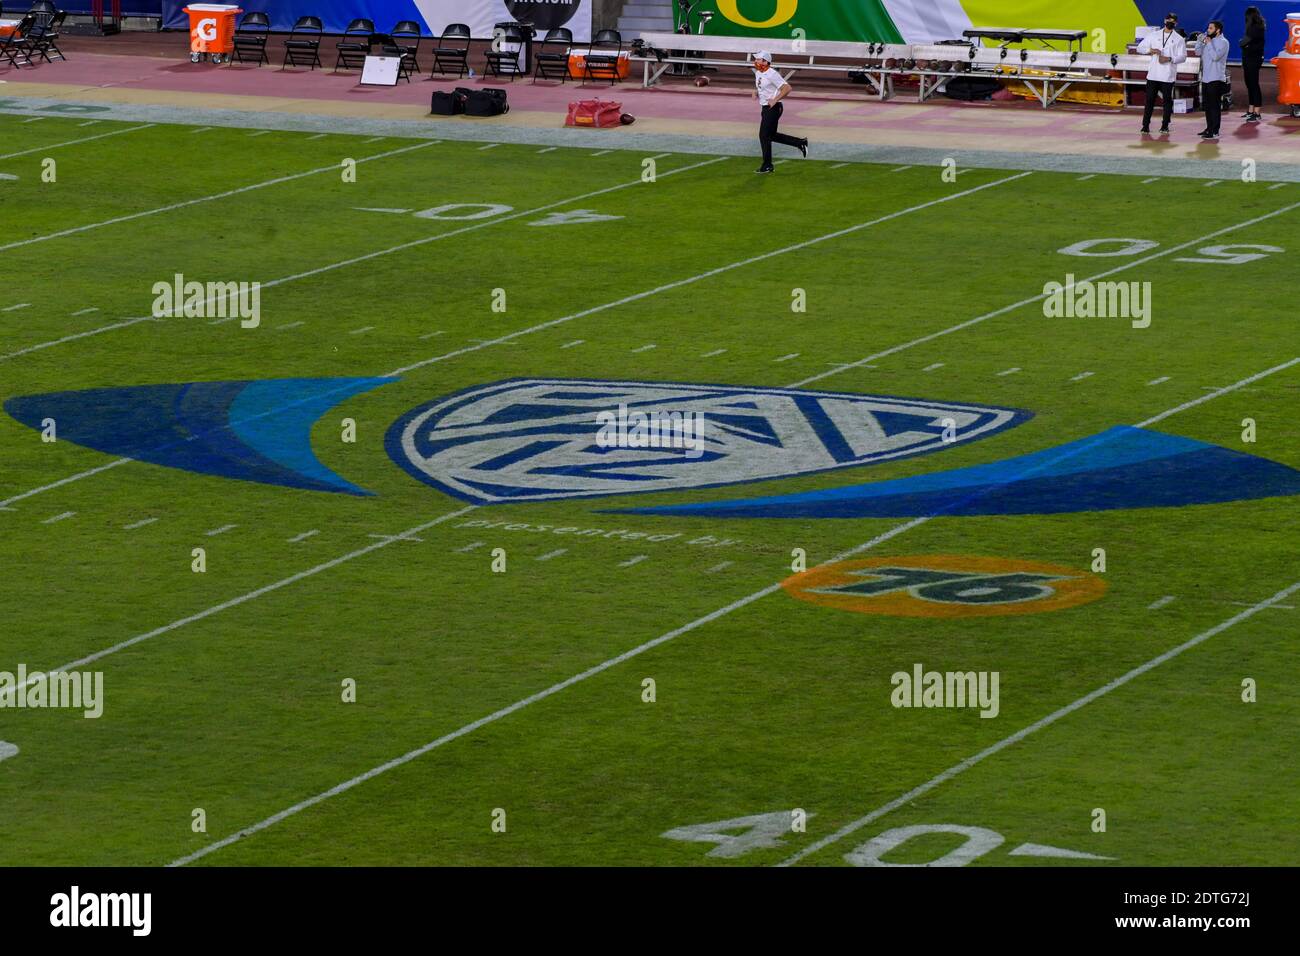 Allgemeine Gesamtansicht der Beschilderung der Fußballmeisterschaft Pac-12 während einer NCAA Fußballspiel zwischen den Oregon Ducks und dem Süden Kalifornische Trojaner Stockfoto